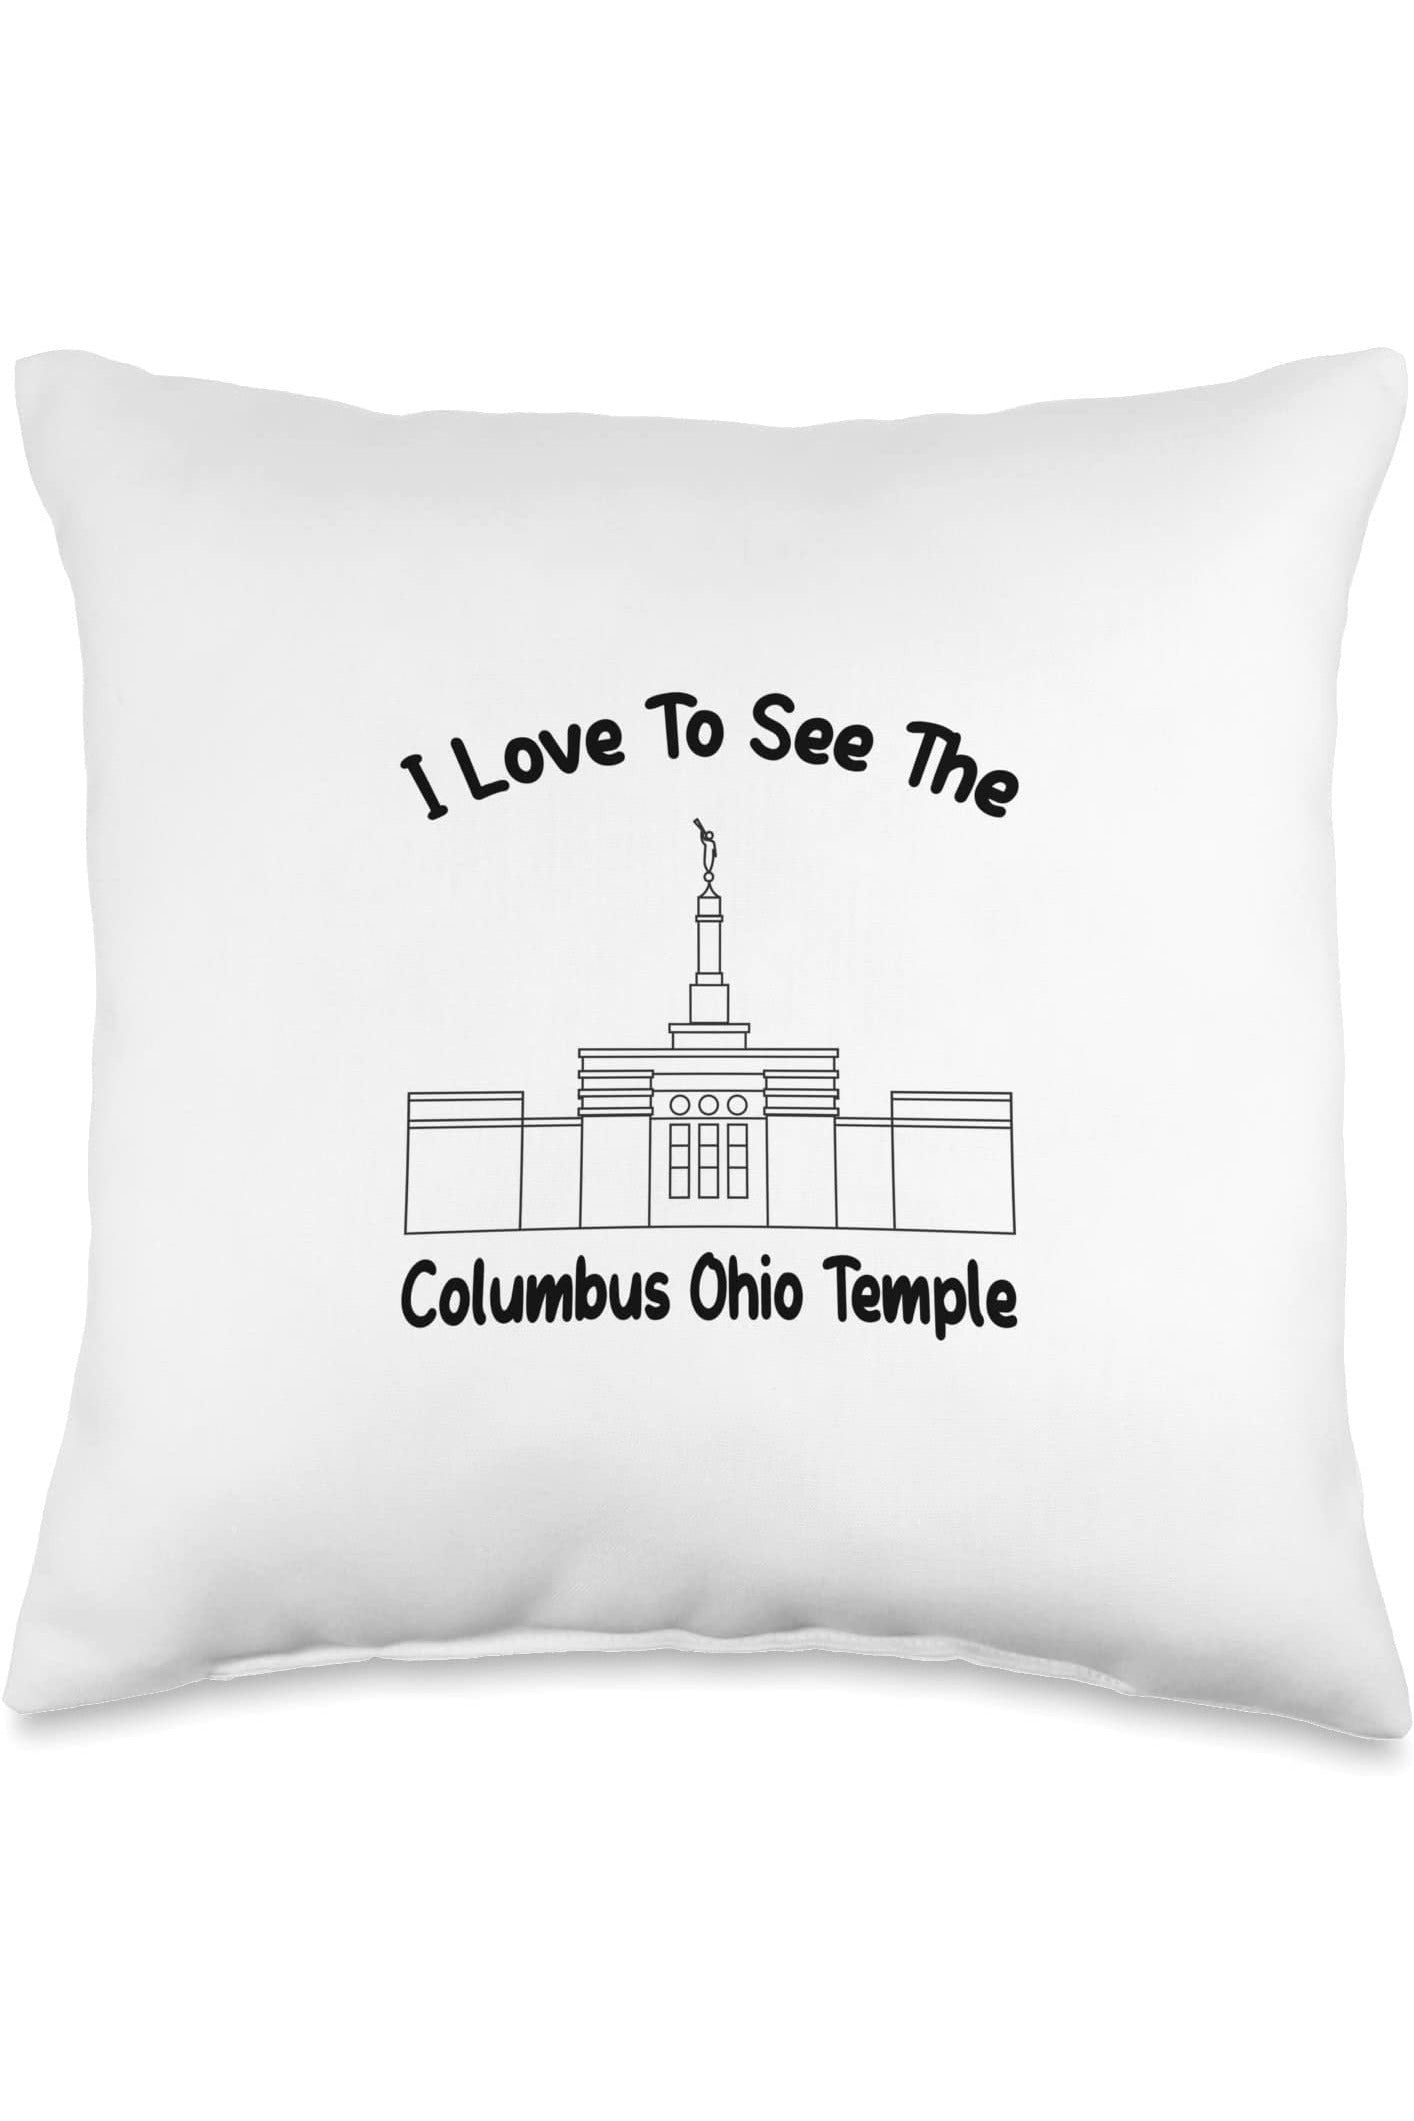 Columbus Ohio Temple Throw Pillows - Primary Style (English) US